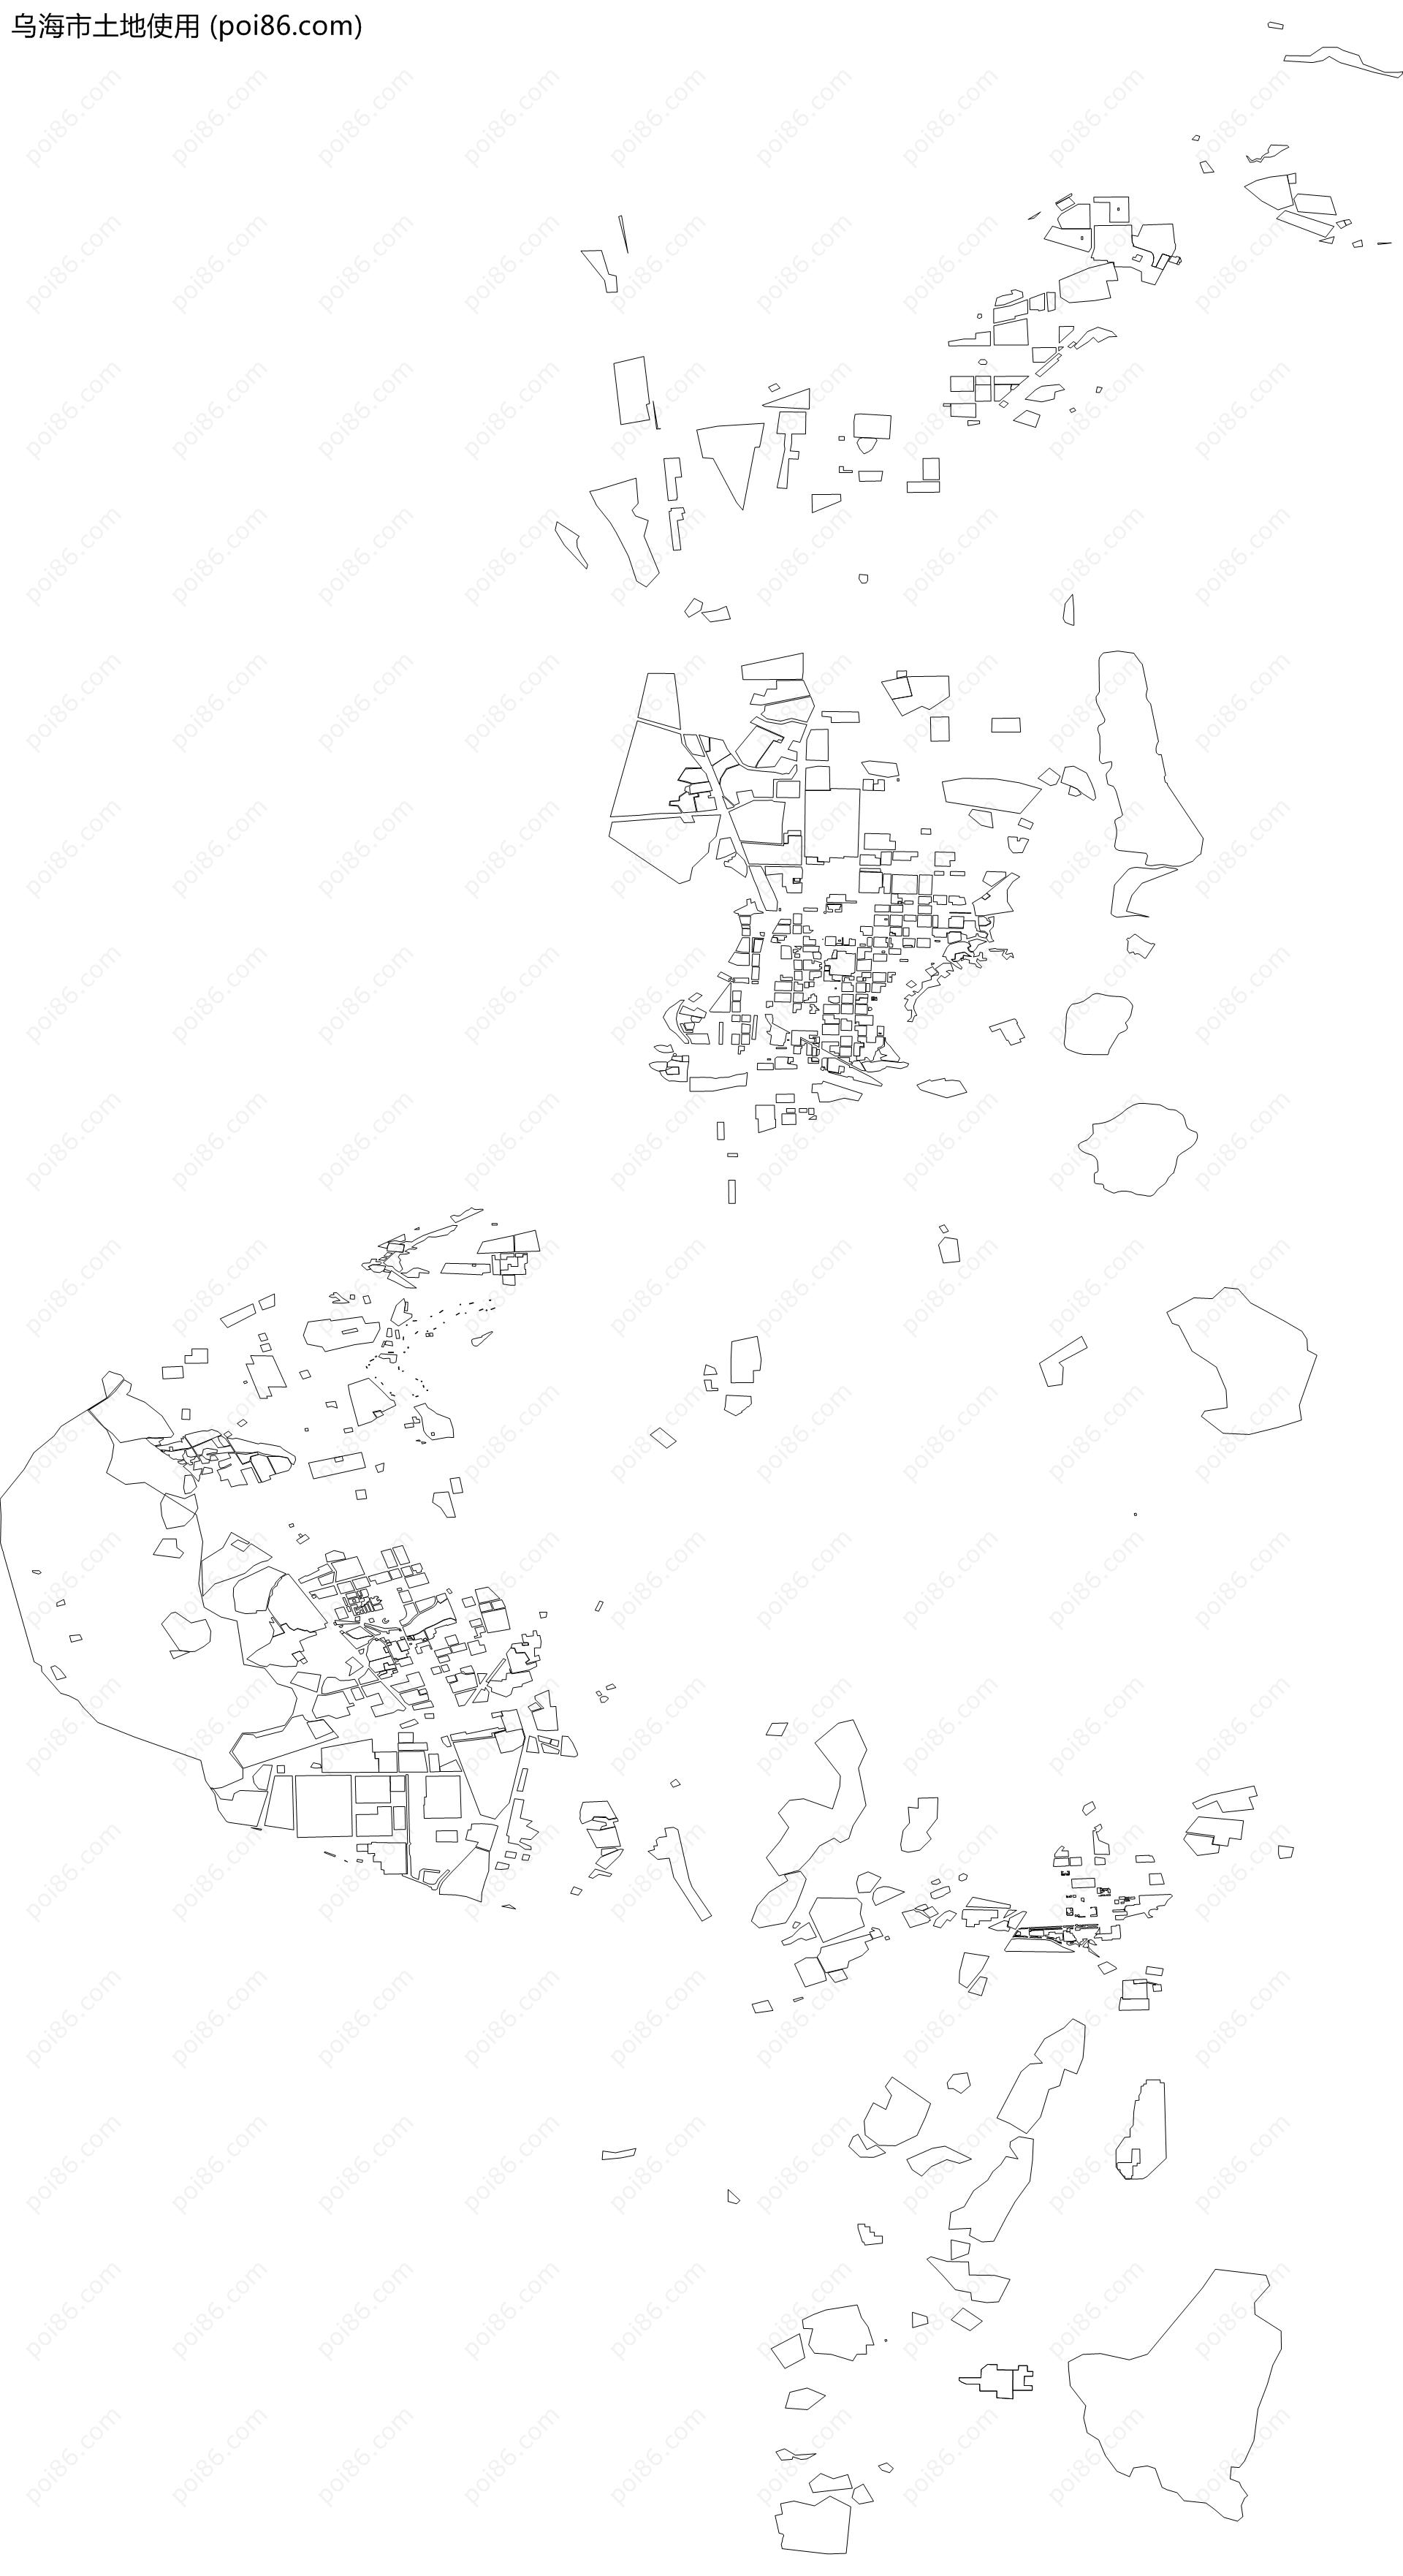 乌海市土地使用地图